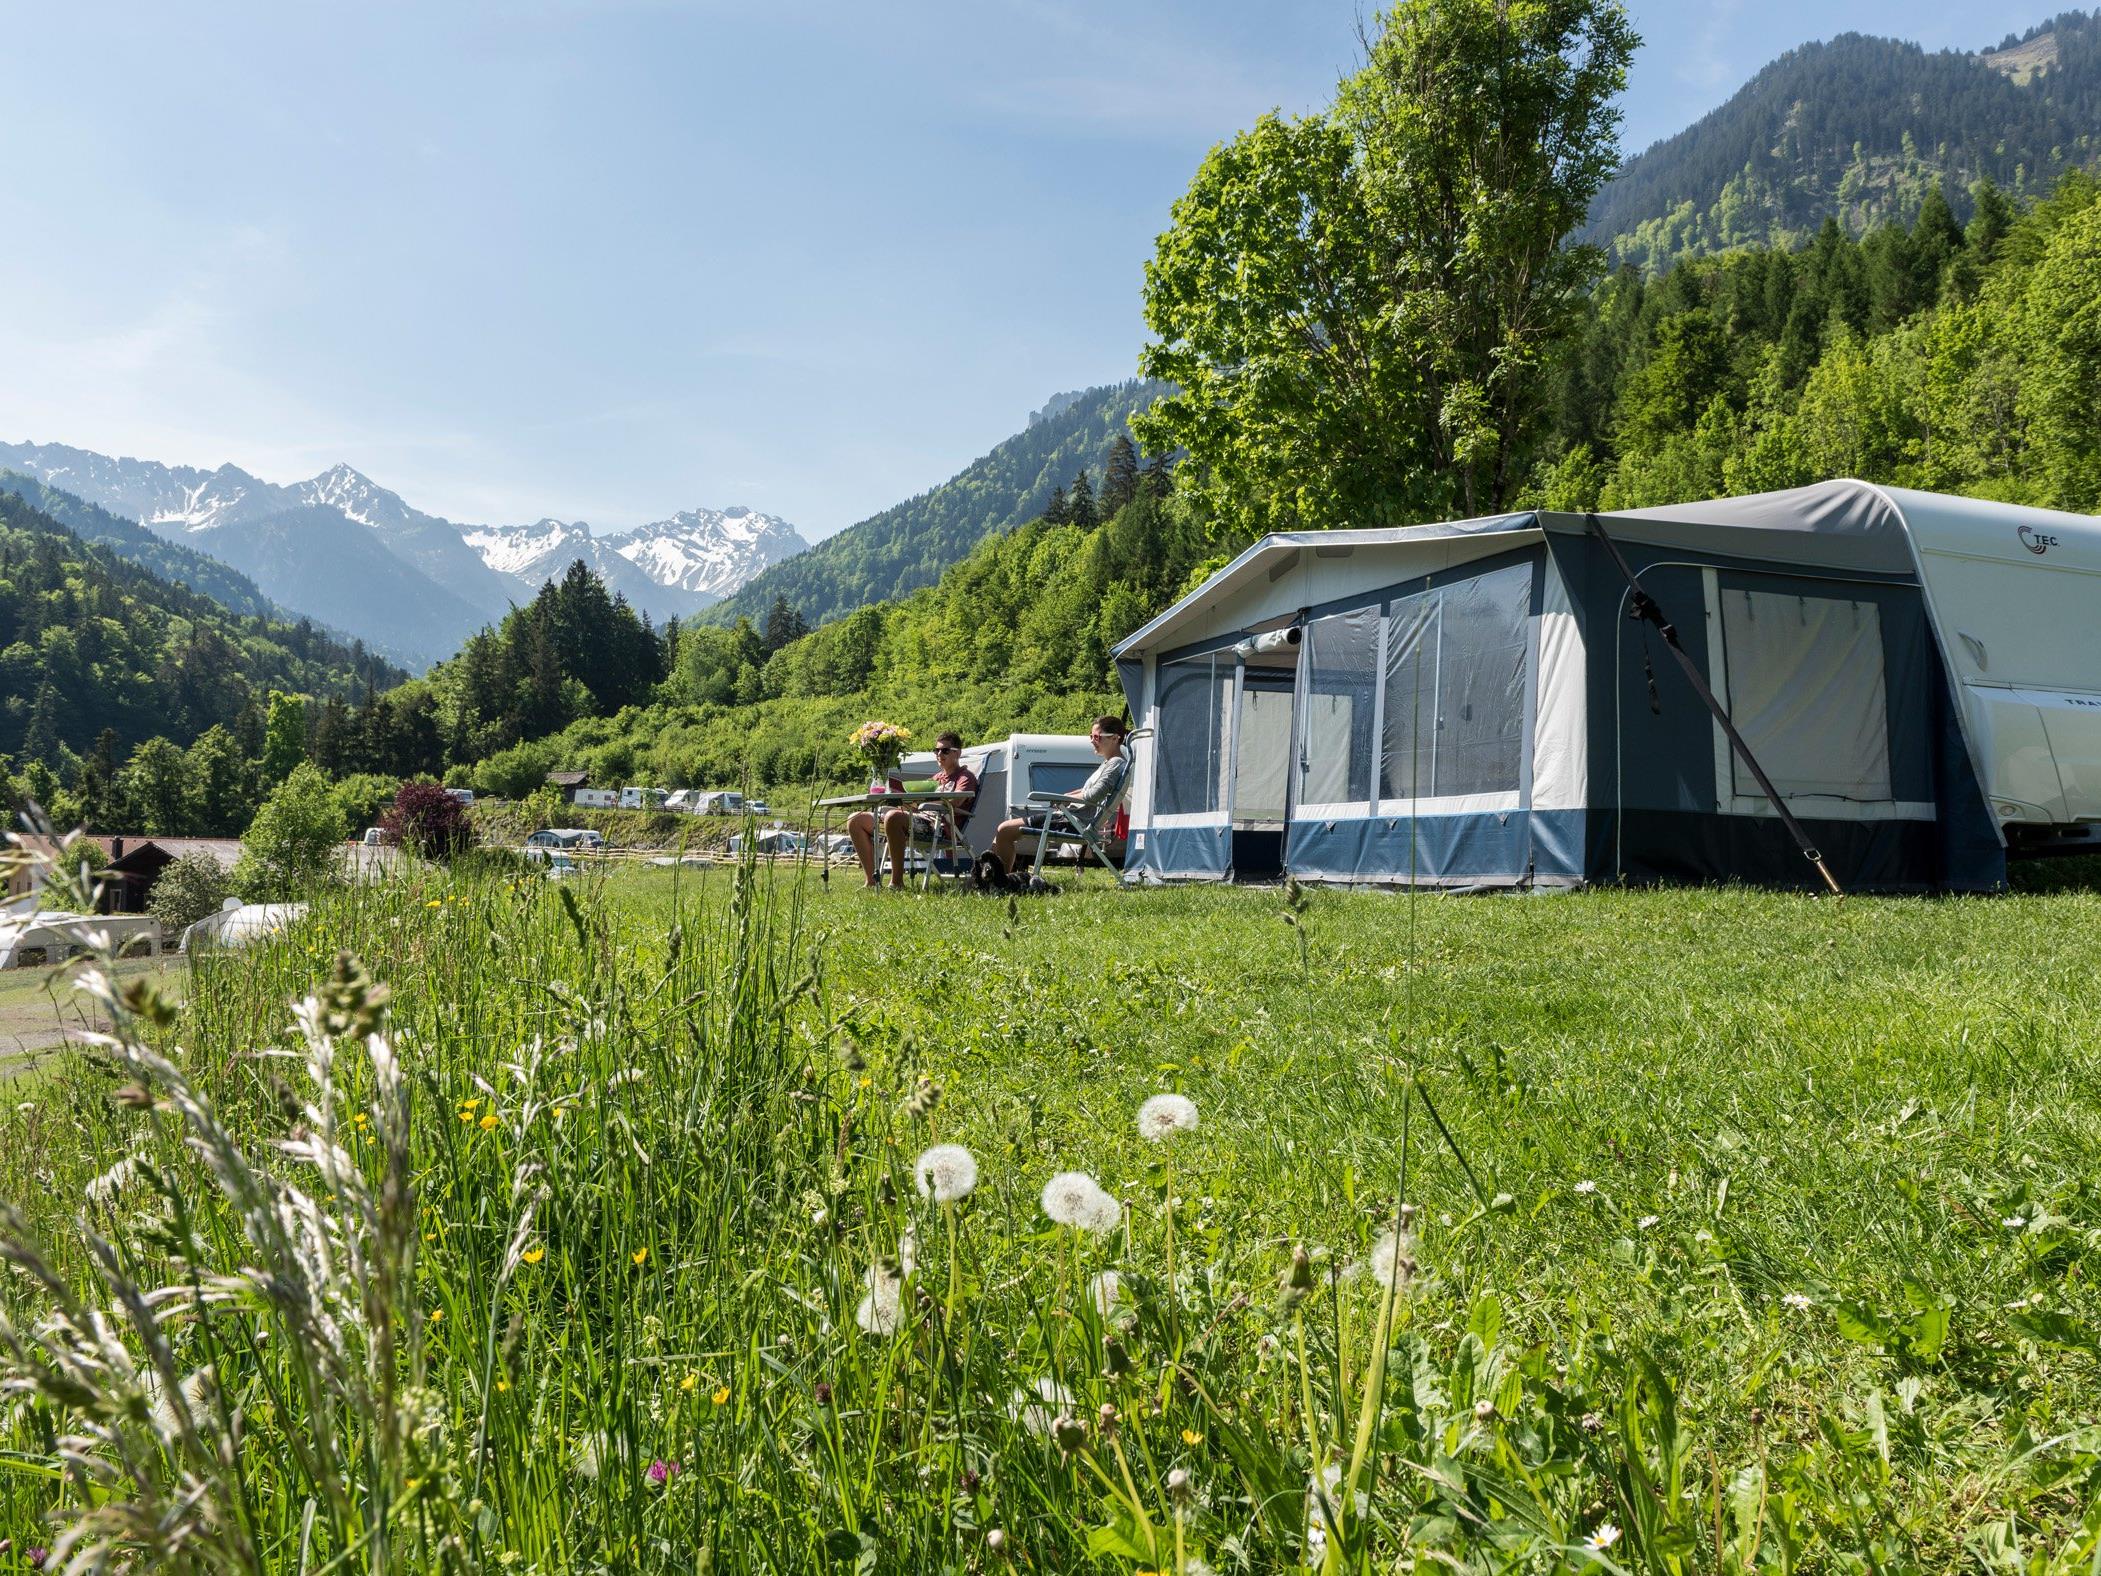 Campen in Vorarlberg wir immer beliebter. Bester Campingplatz im Ländle ist laut dem Europa Top 100 Ranking das Alpencamping in Nenzing.